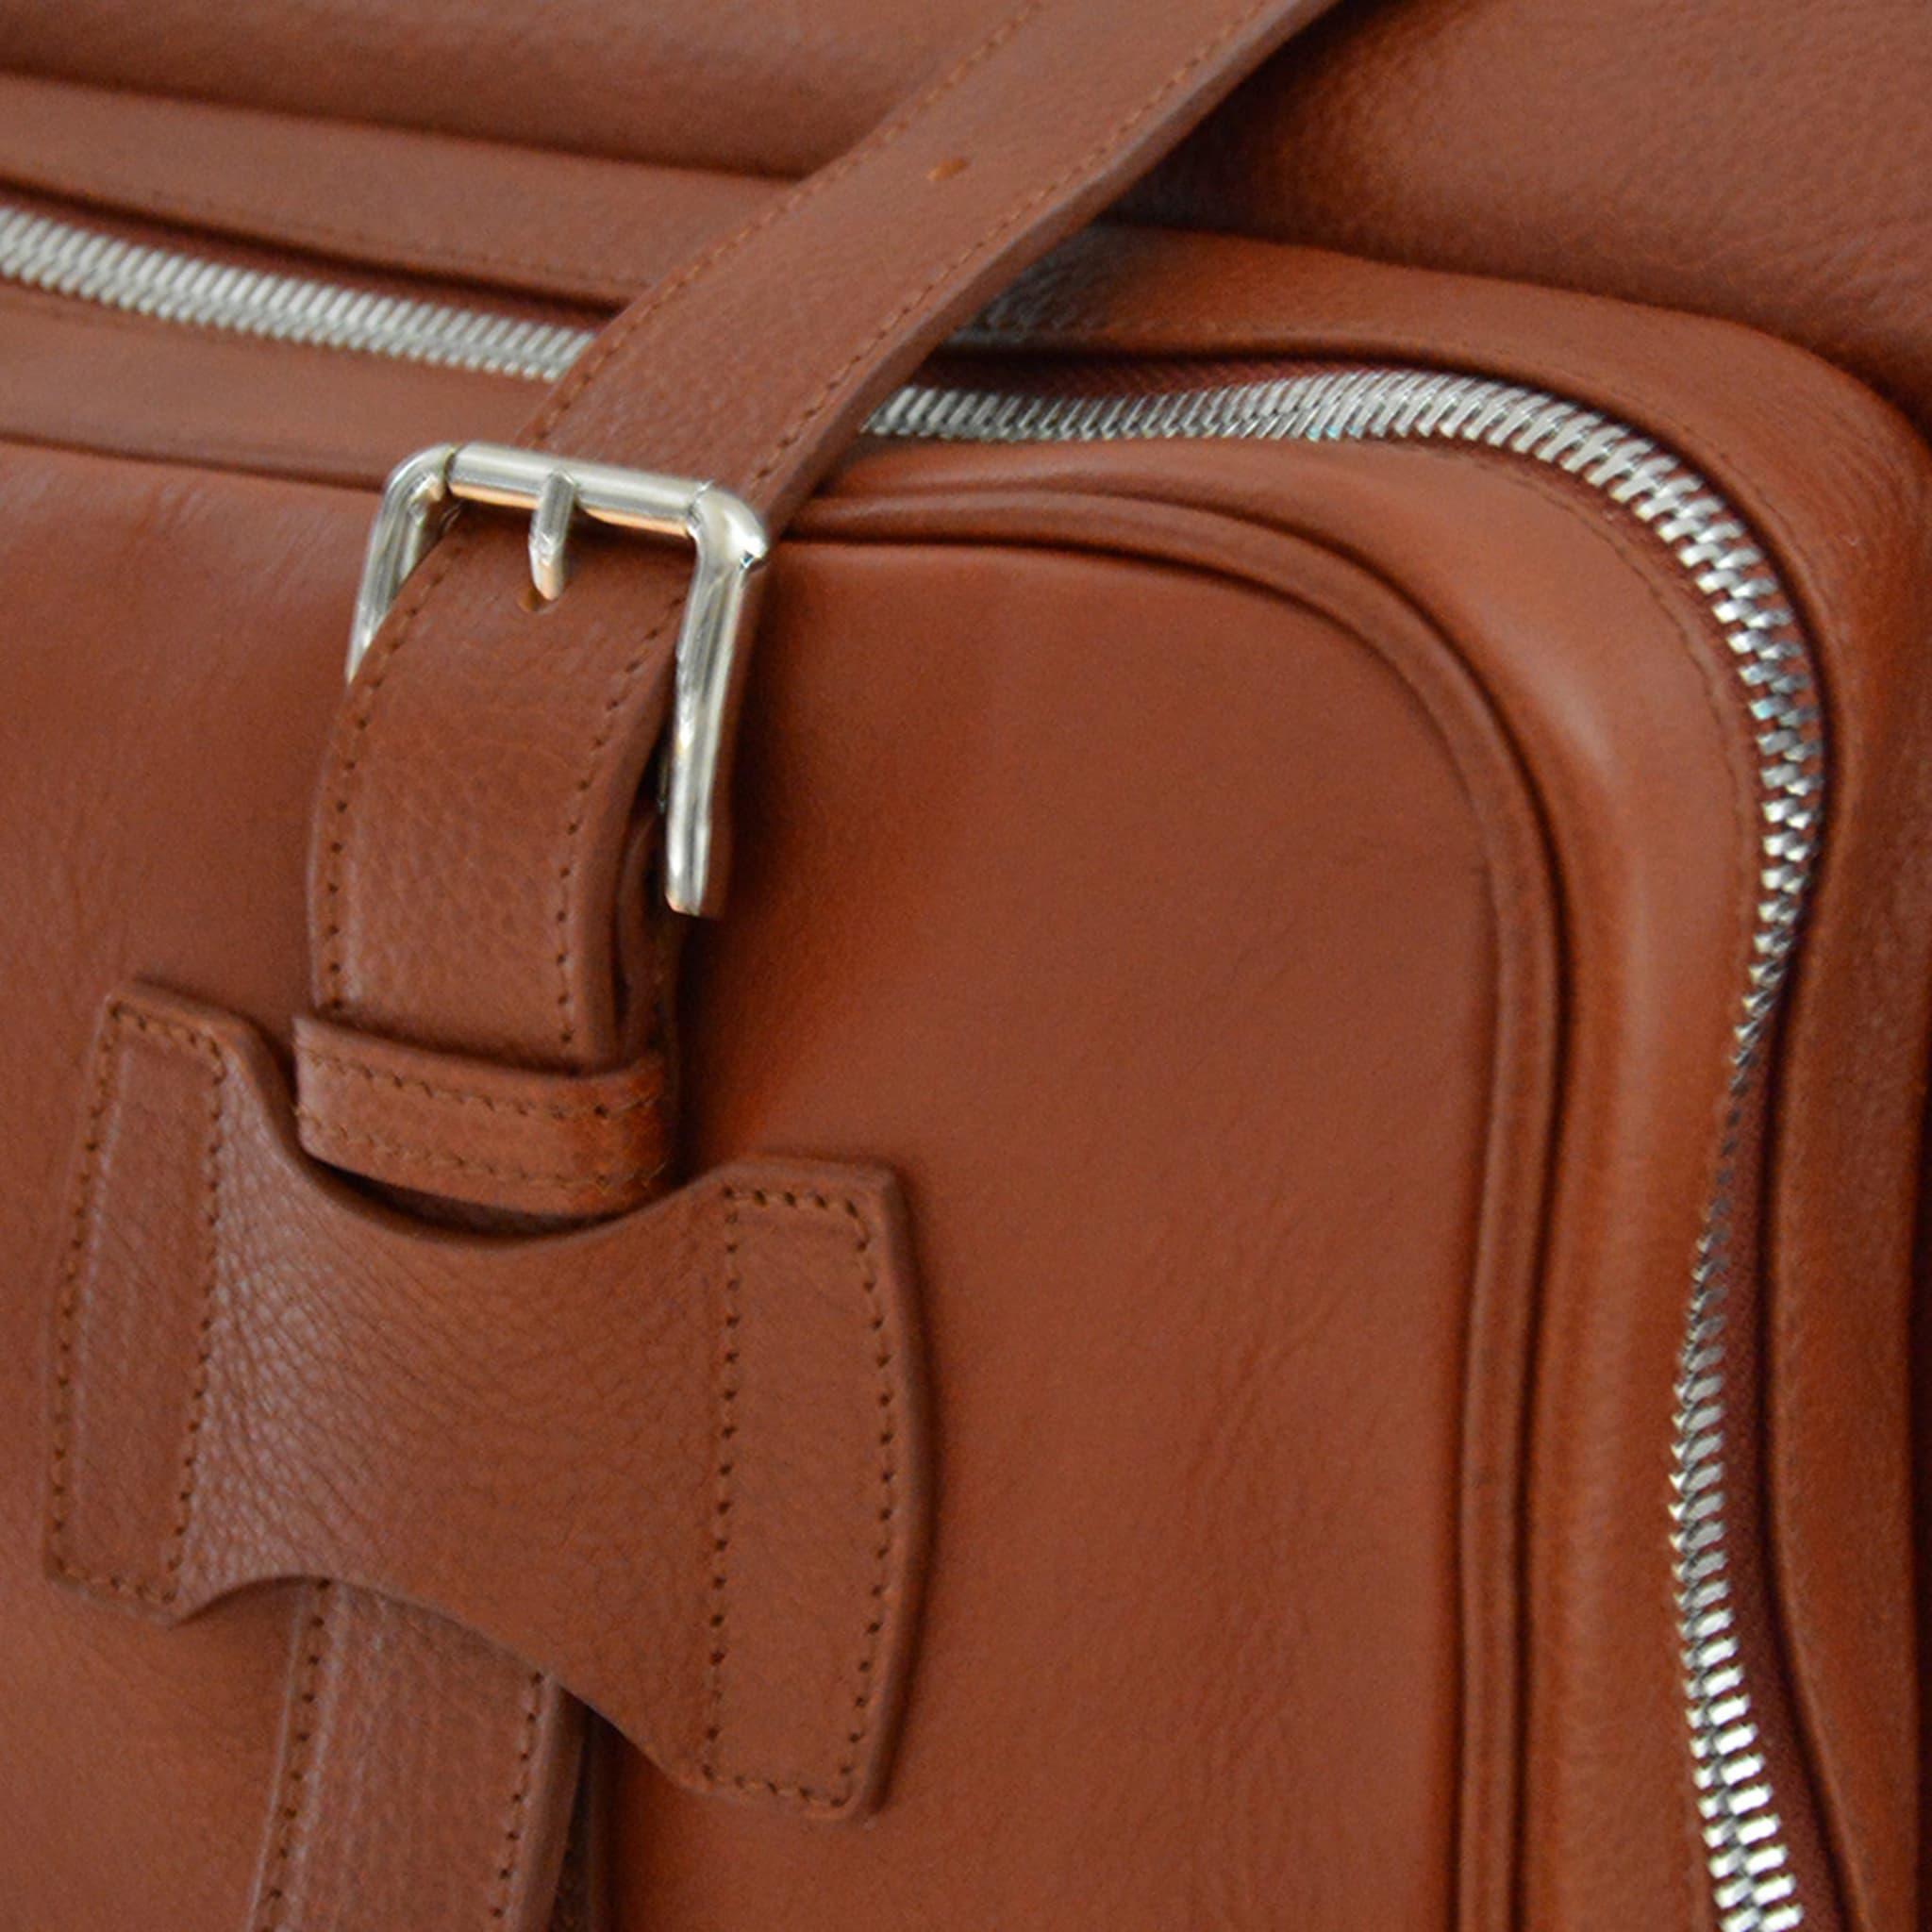 Diese luxuriöse Tasche aus hochwertigem, pflanzlich gegerbtem Leder enthält Innentaschen, eine Außentasche auf der Vorderseite und zwei Seitentaschen. Ein optionaler und verstellbarer Schulterriemen verleiht dieser eleganten braunen Overnight Bag